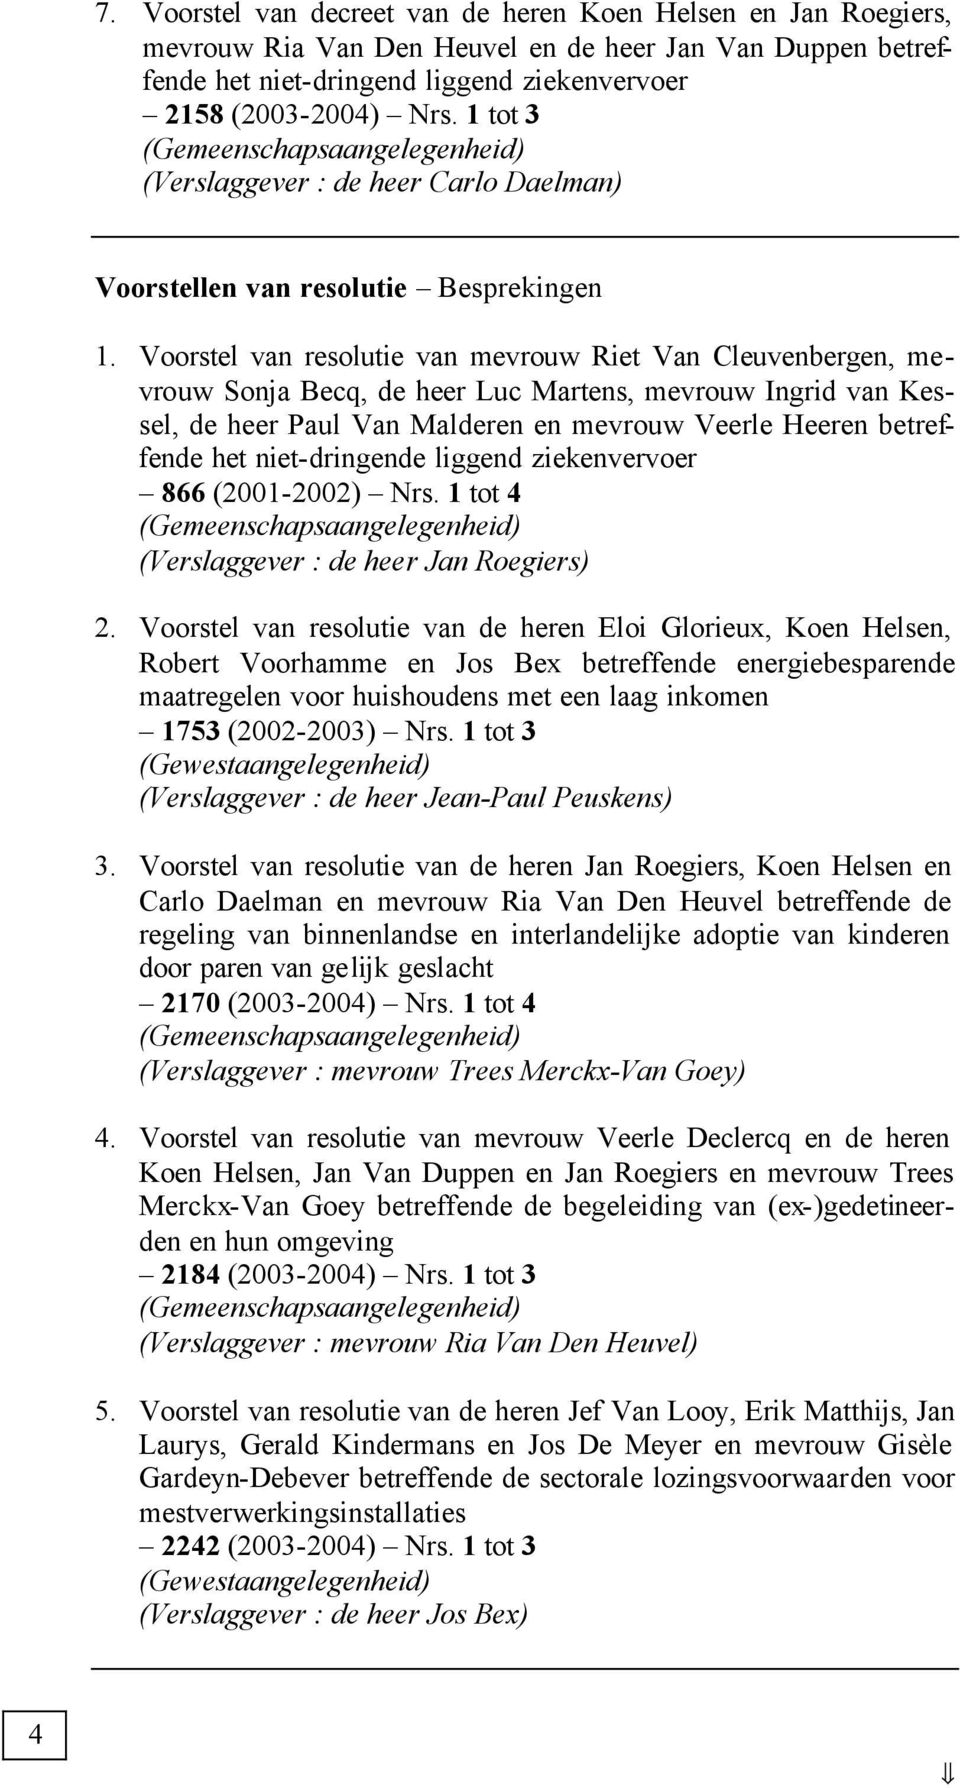 Voorstel van resolutie van mevrouw Riet Van Cleuvenbergen, mevrouw Sonja Becq, de heer Luc Martens, mevrouw Ingrid van Kessel, de heer Paul Van Malderen en mevrouw Veerle Heeren betreffende het